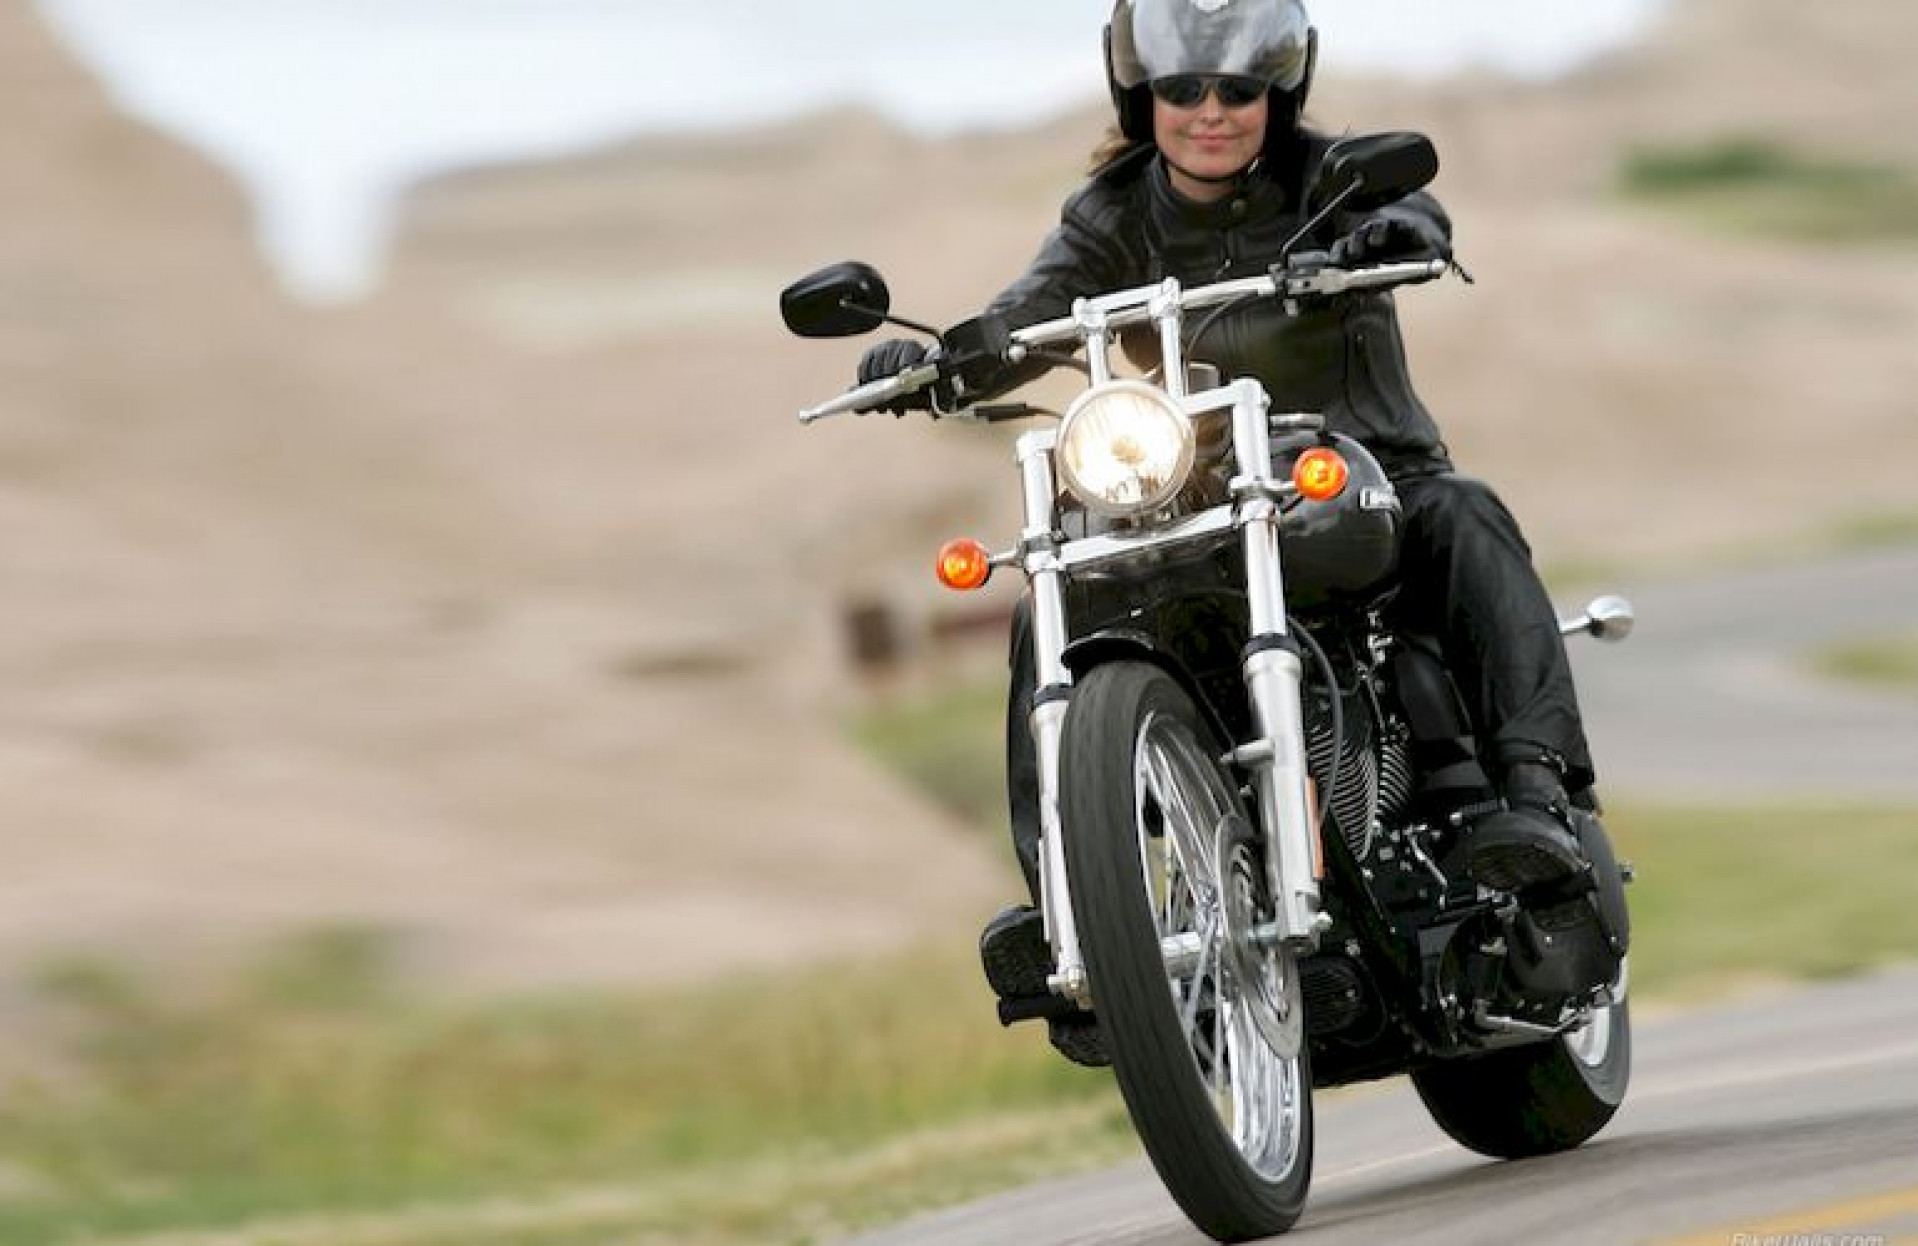 Как правильно ездить на мотоцикле. Harley Davidson 2006 Softail Heritage. Женский Харлей Дэвидсон мотоцикл. Харлей Дэвидсон чоппер езда. Девушка на мотоцикле.